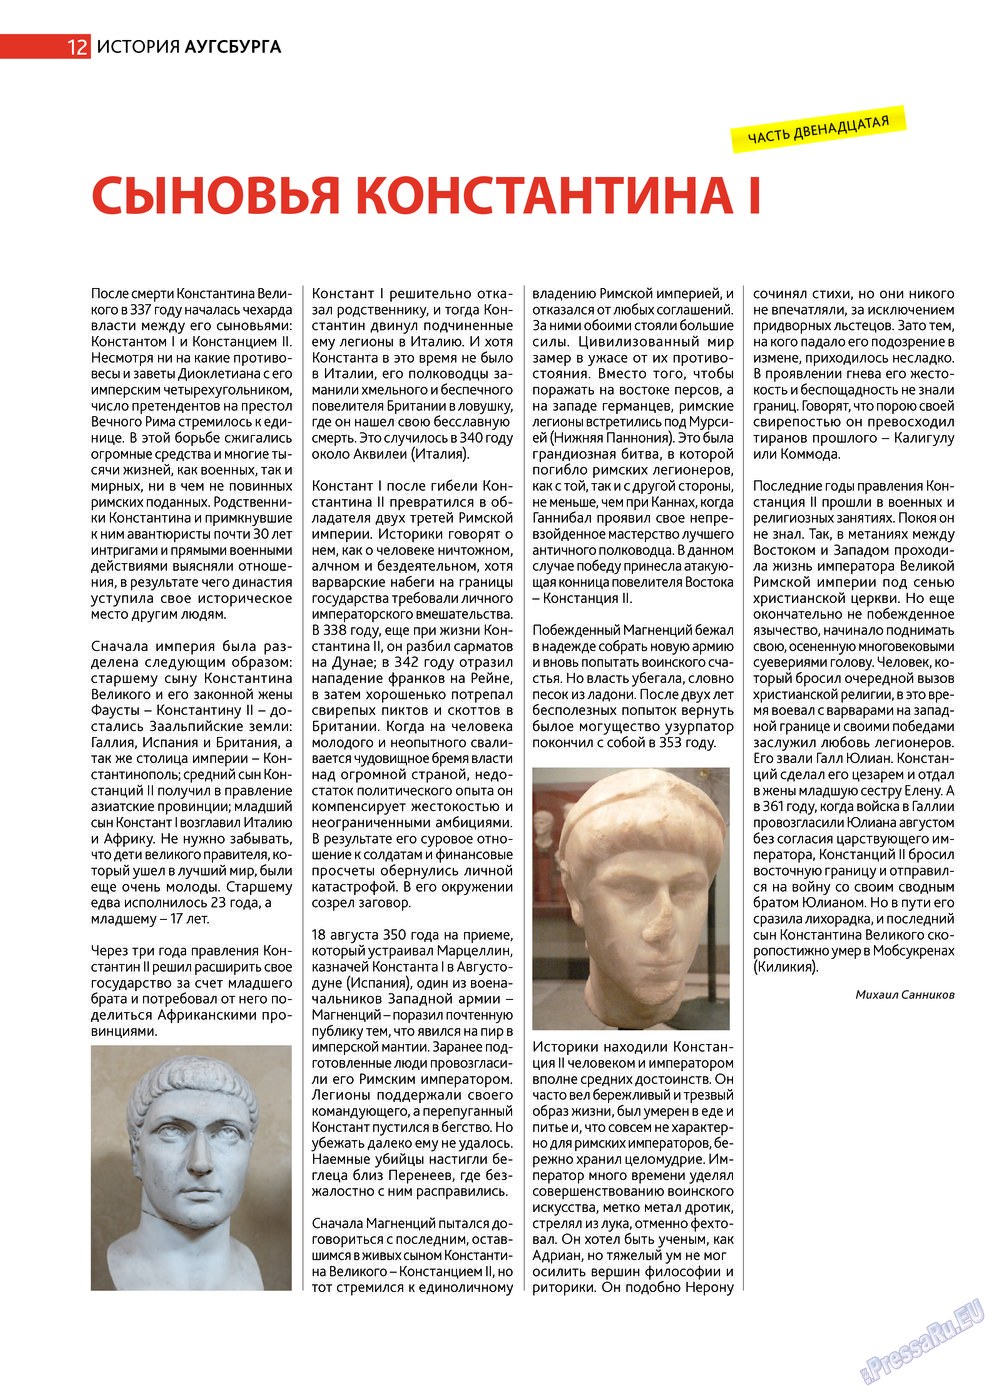 Афиша Augsburg (журнал). 2013 год, номер 5, стр. 12